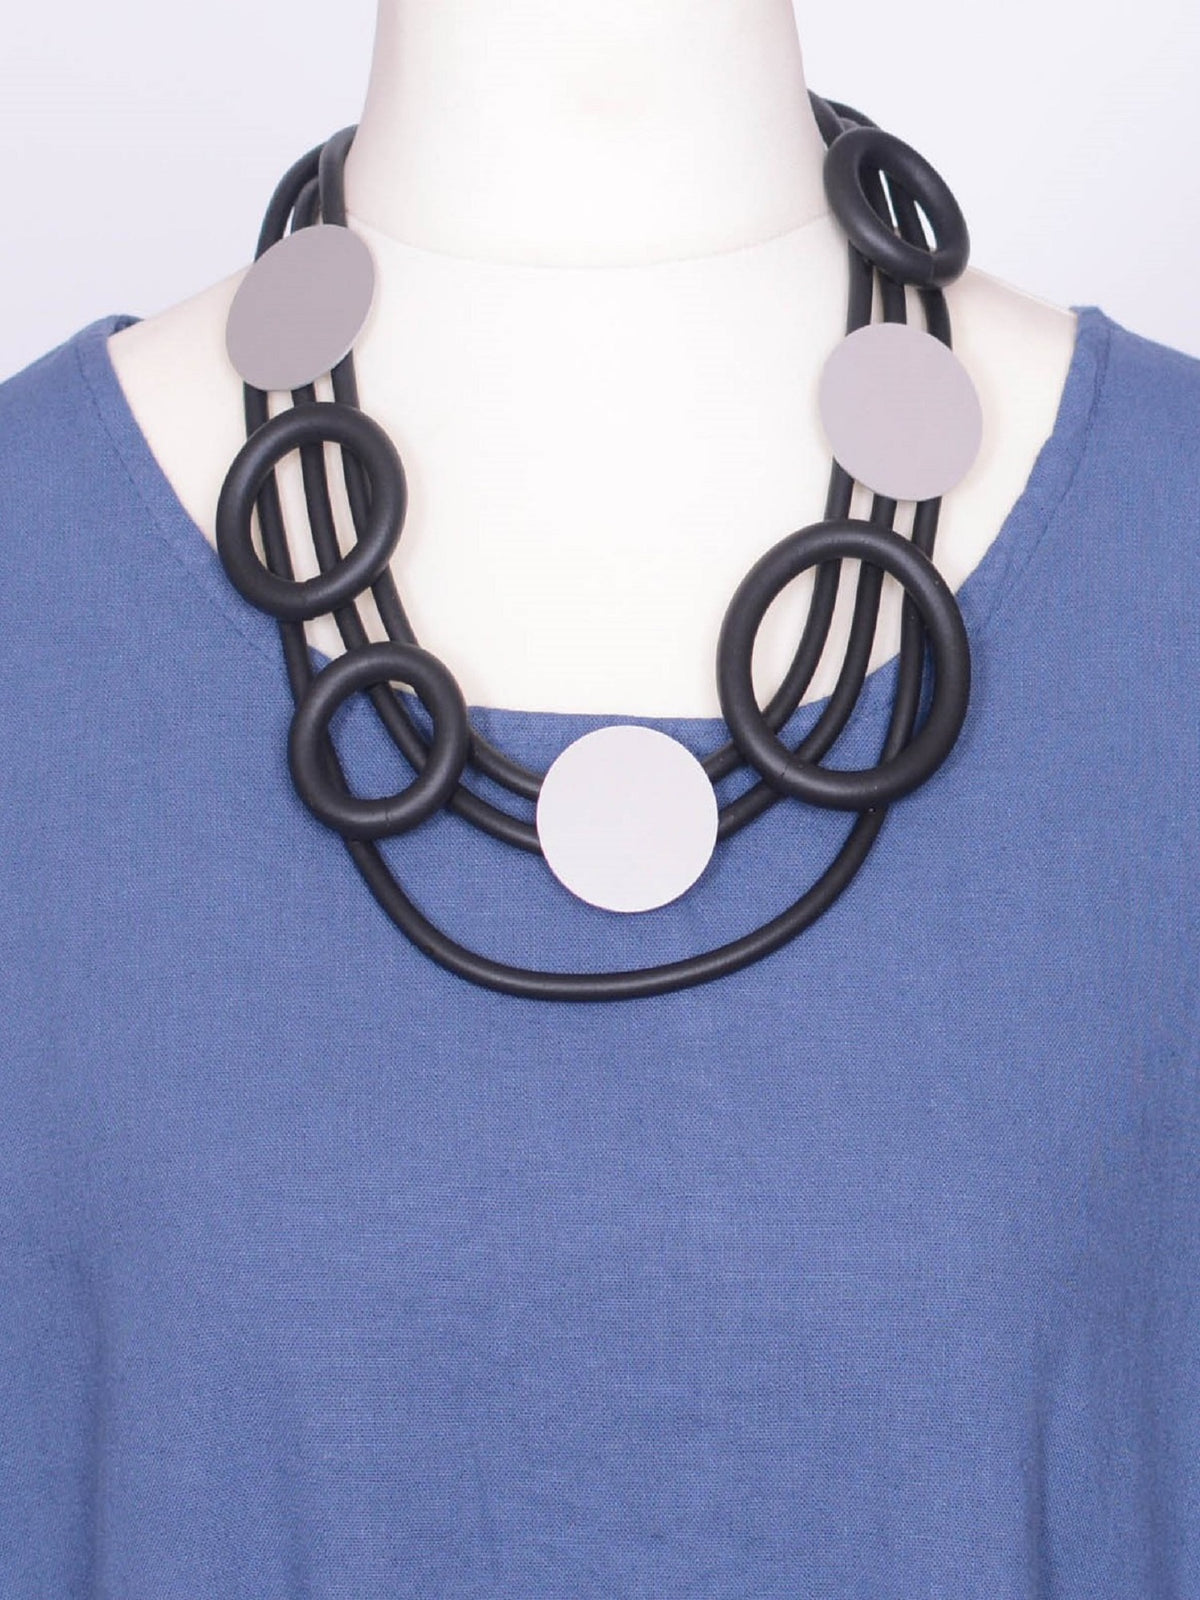 NECKLACE RUBBER BLACK - 5781-53, Necklaces & Pendants, Plus Size Lagenlook, Pure Plus Clothing, Lagenlook Clothing, Pure Plus